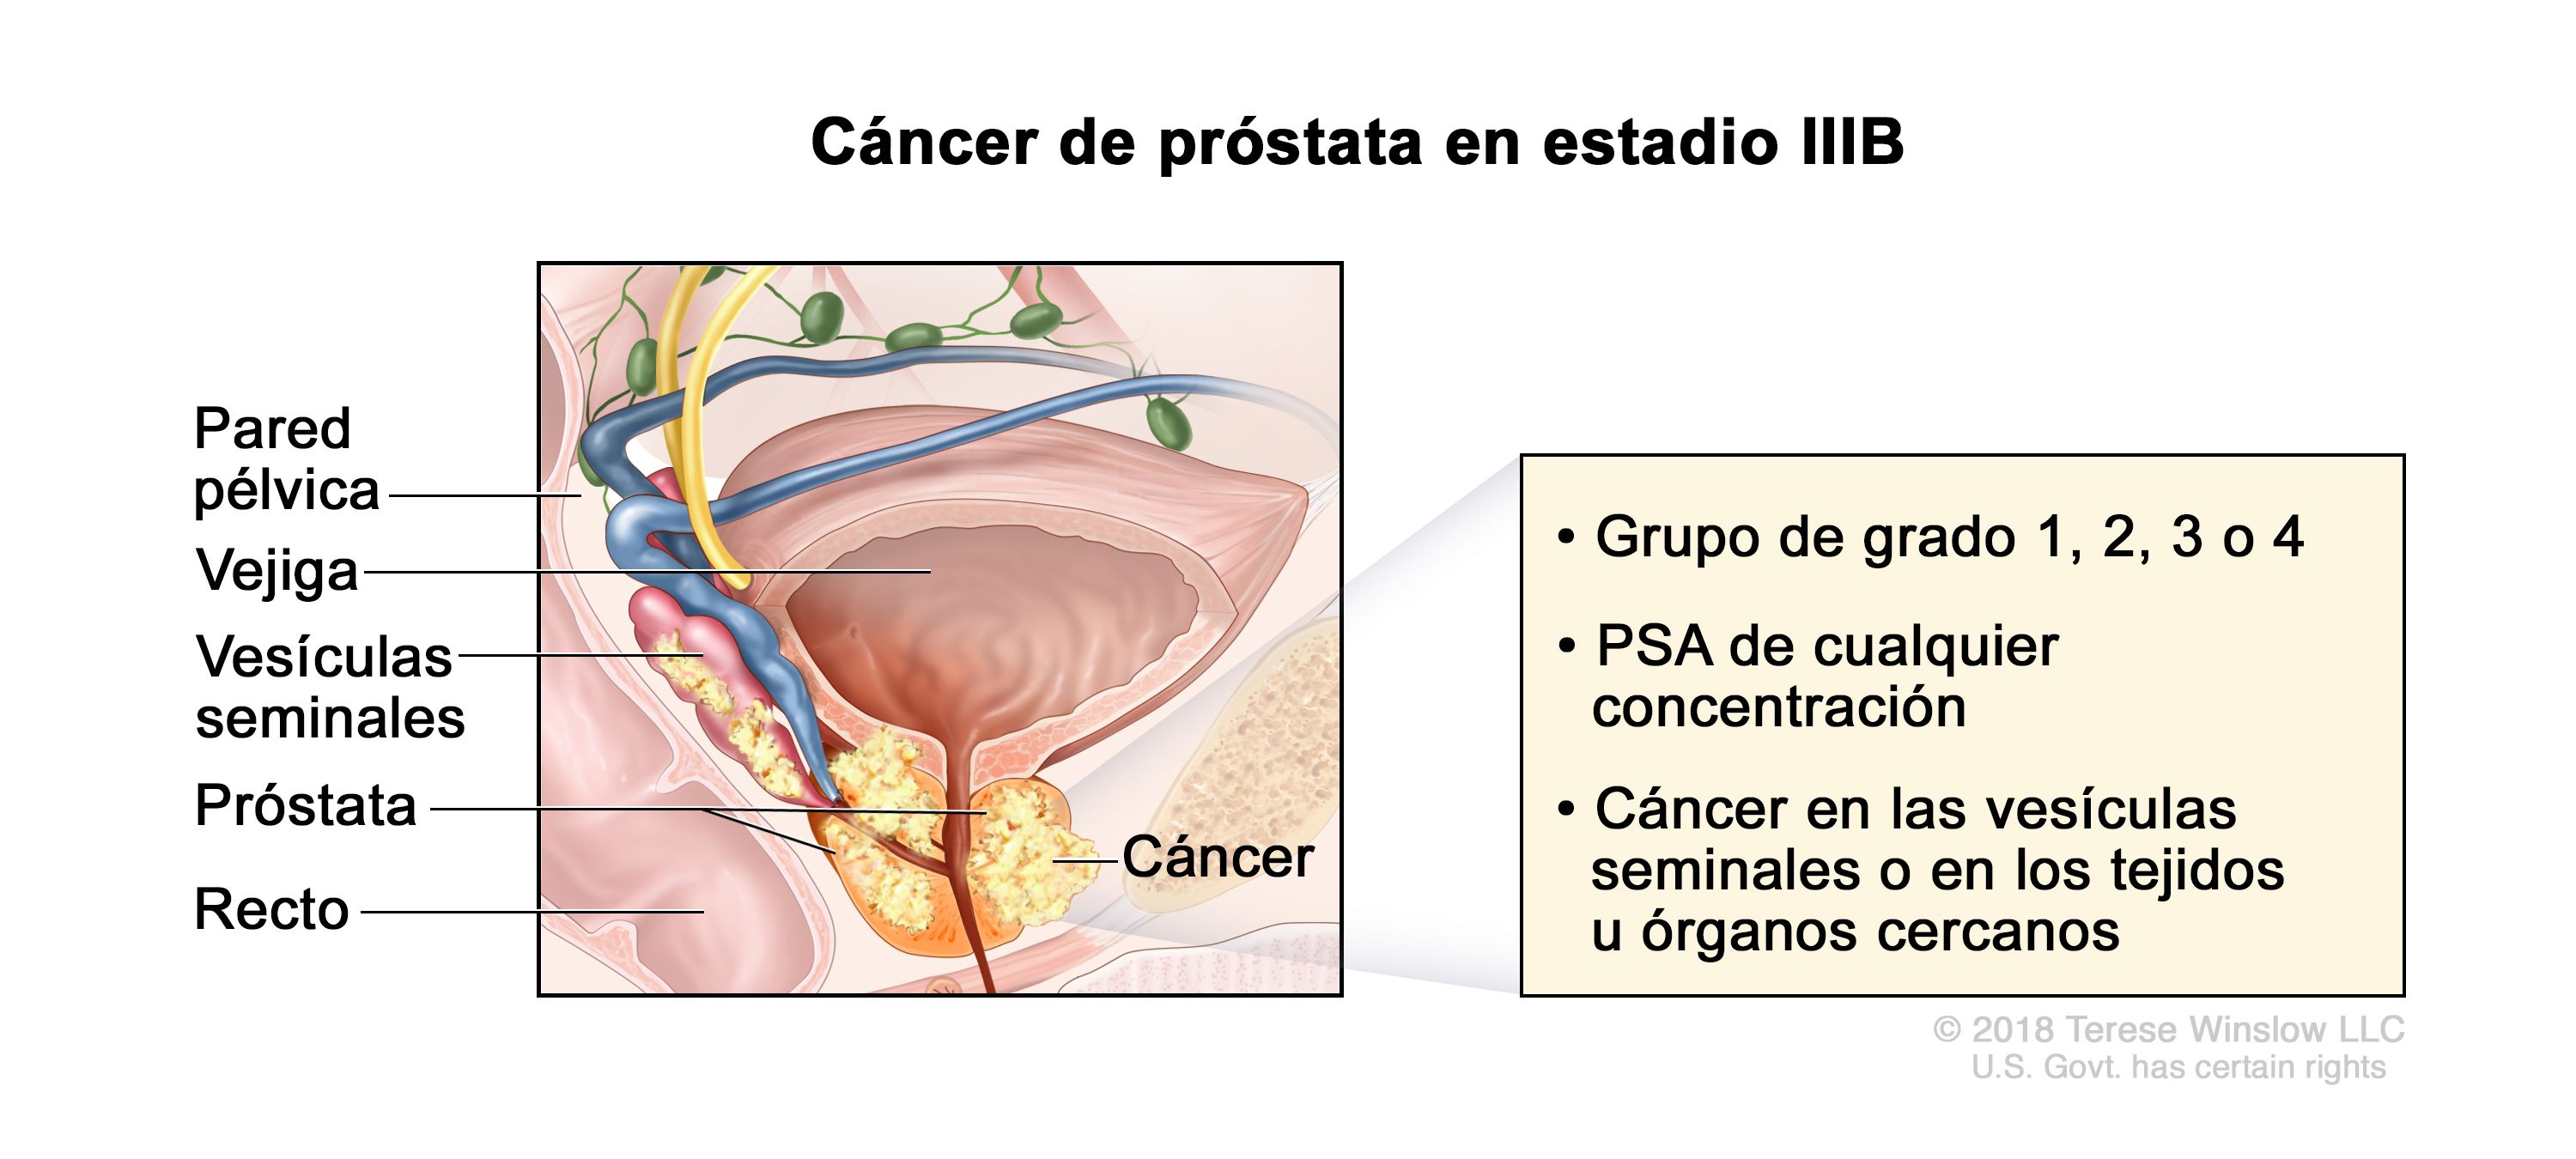 cancer de prostata etapa 4 sintomas)